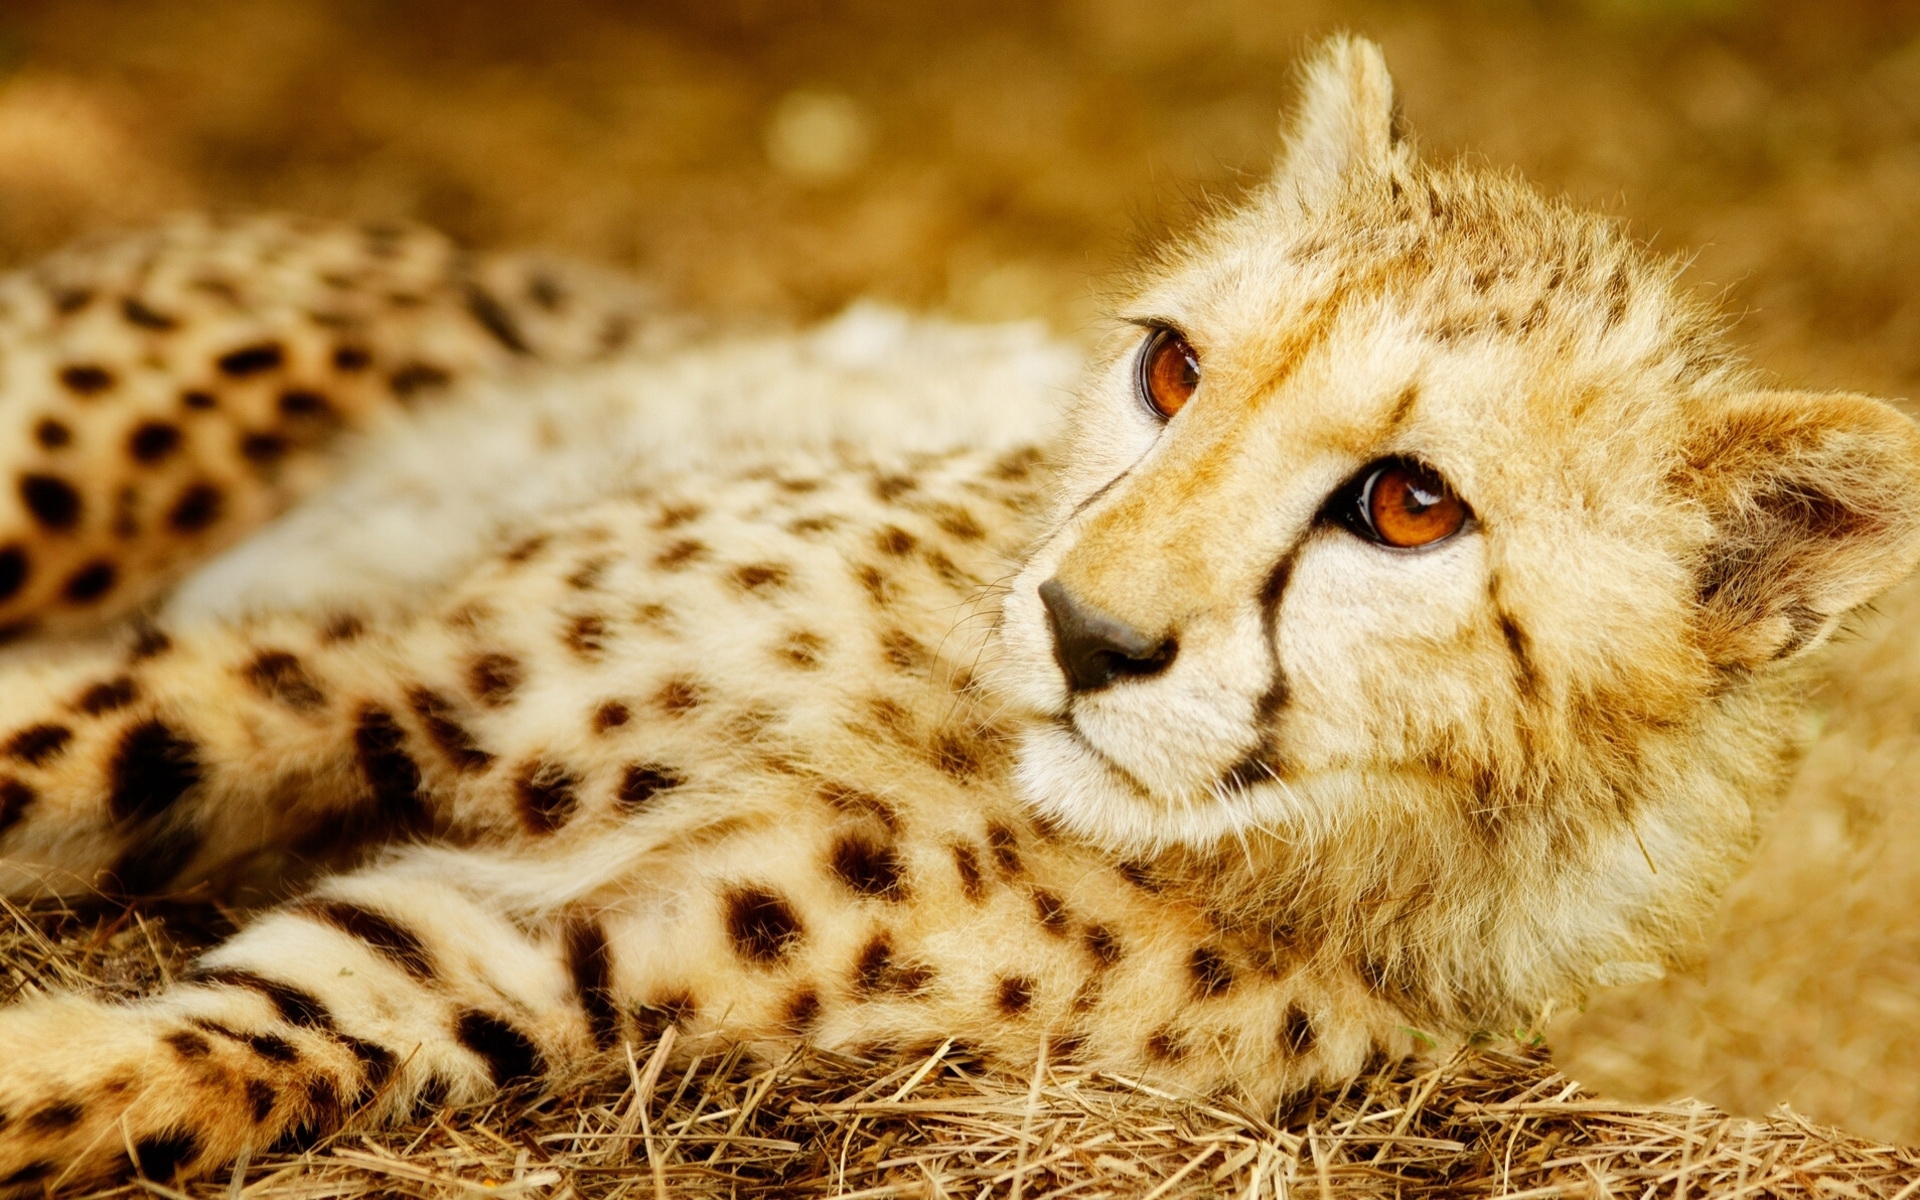 of Cheetah 4K wallpaper for your desktop or mobile screen